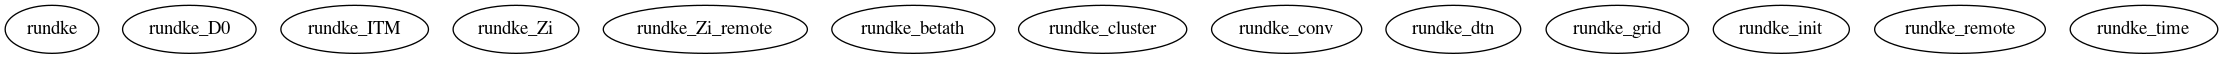 Dependency Graph for LUKE/Simulations/Benchmarks/TScyl/LH_Karney